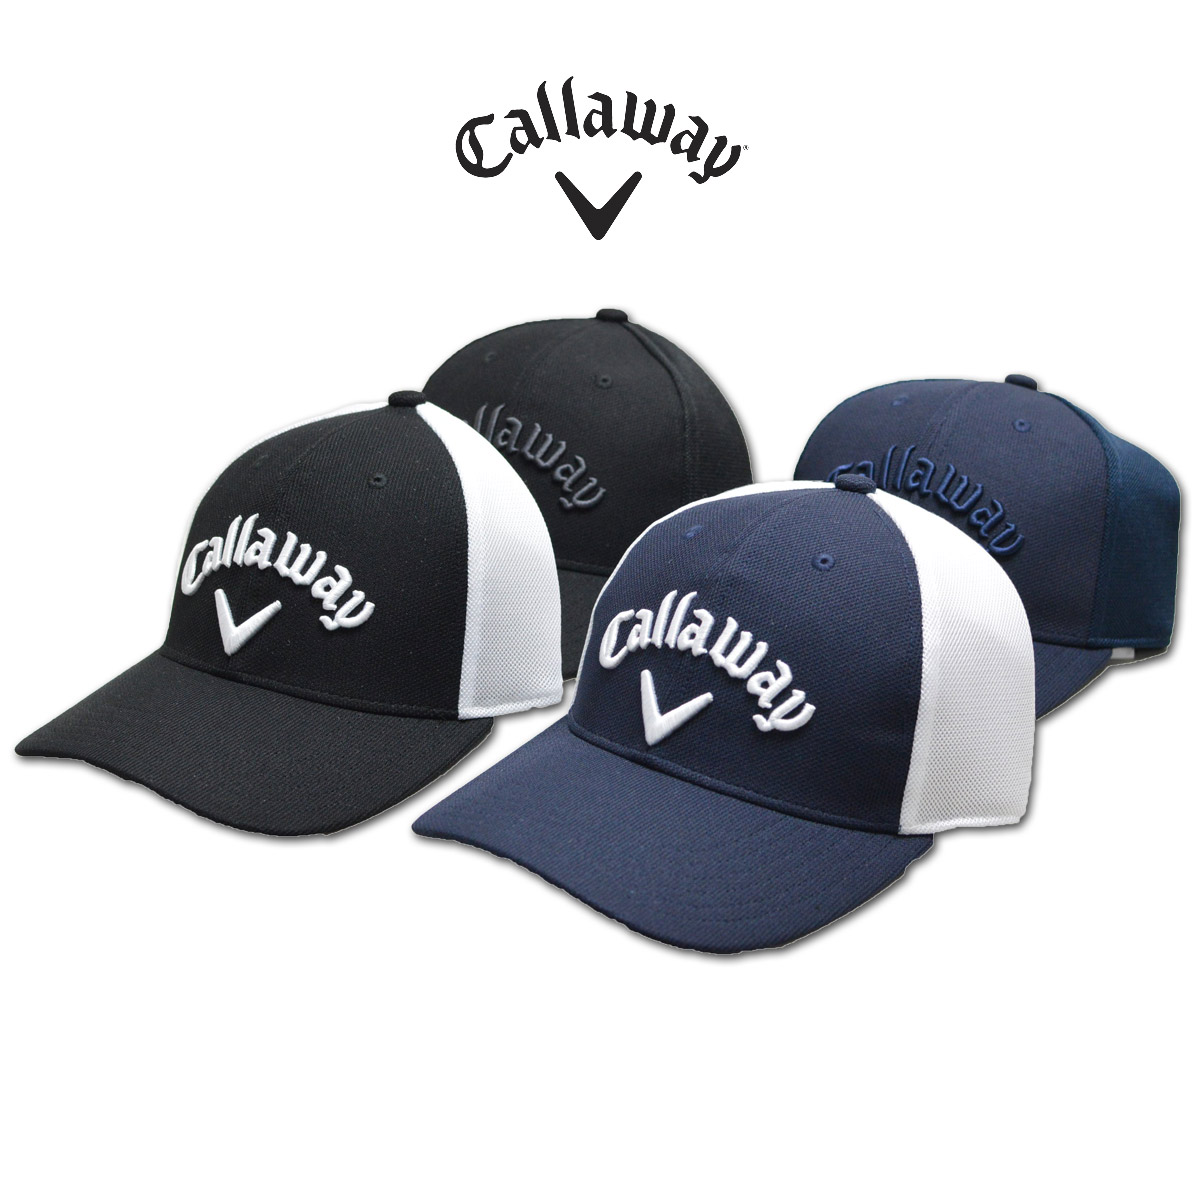 ゴルフ帽子 キャロウェイ キャップ ゴルフ - ゴルフ帽子の人気商品 